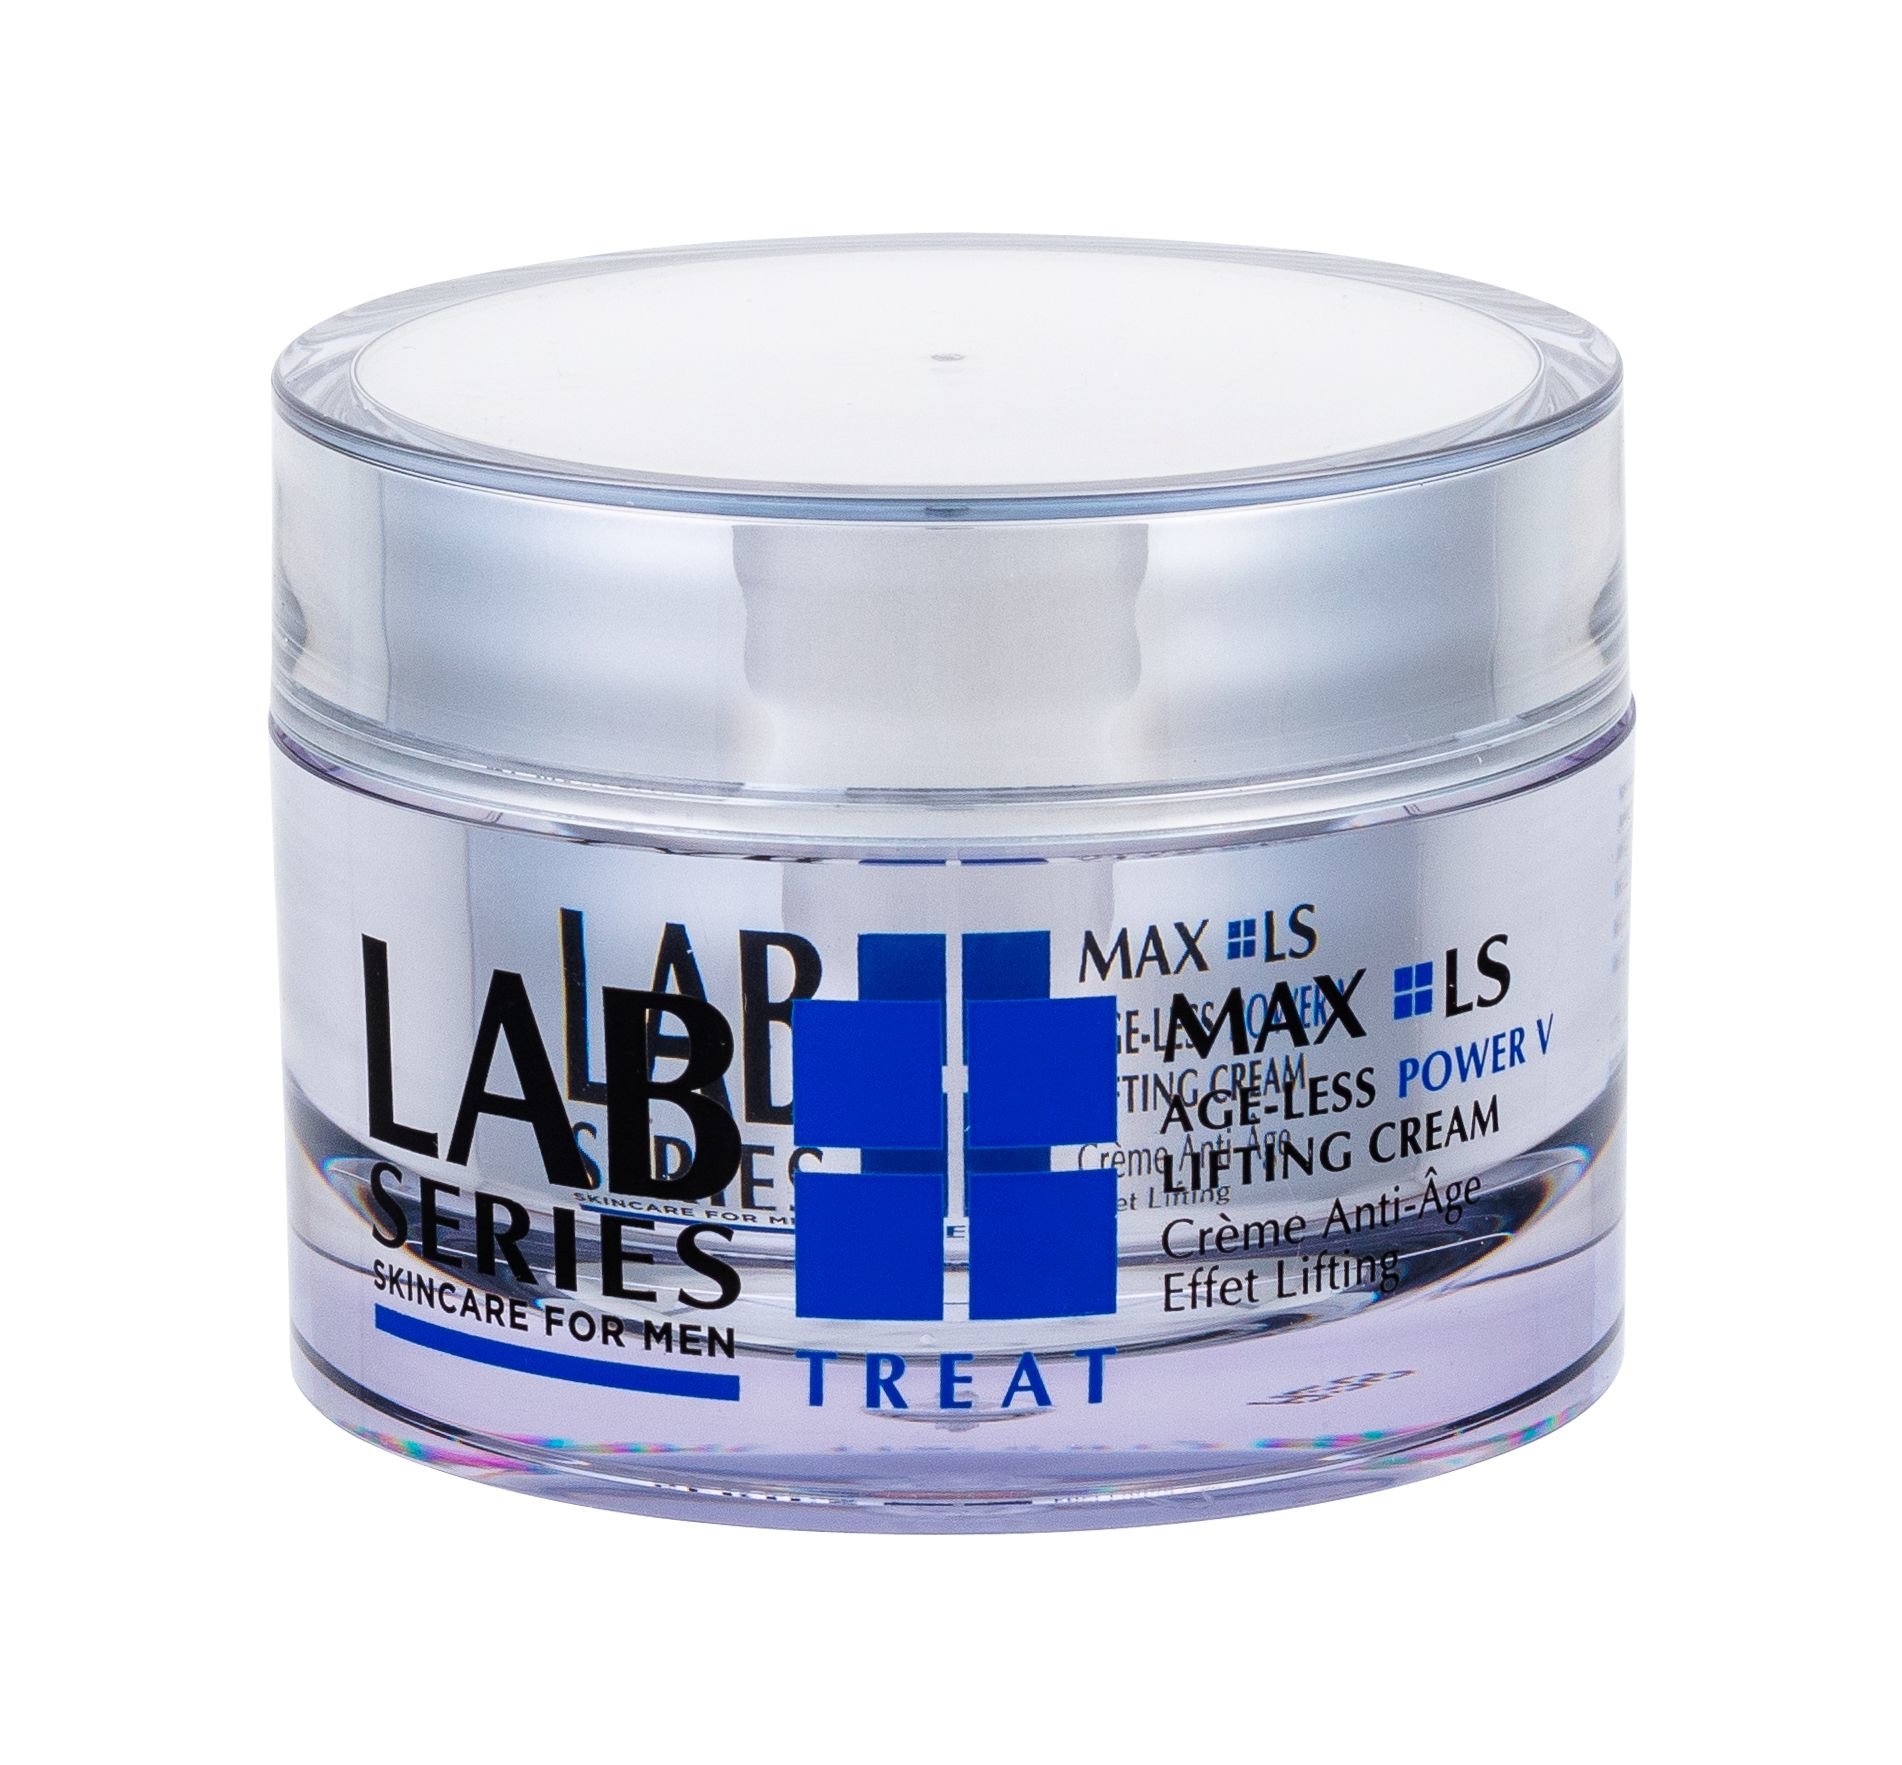 Lab Series MAX LS Age-Less Power V Lifting Cream 50ml dieninis kremas (Pažeista pakuotė)